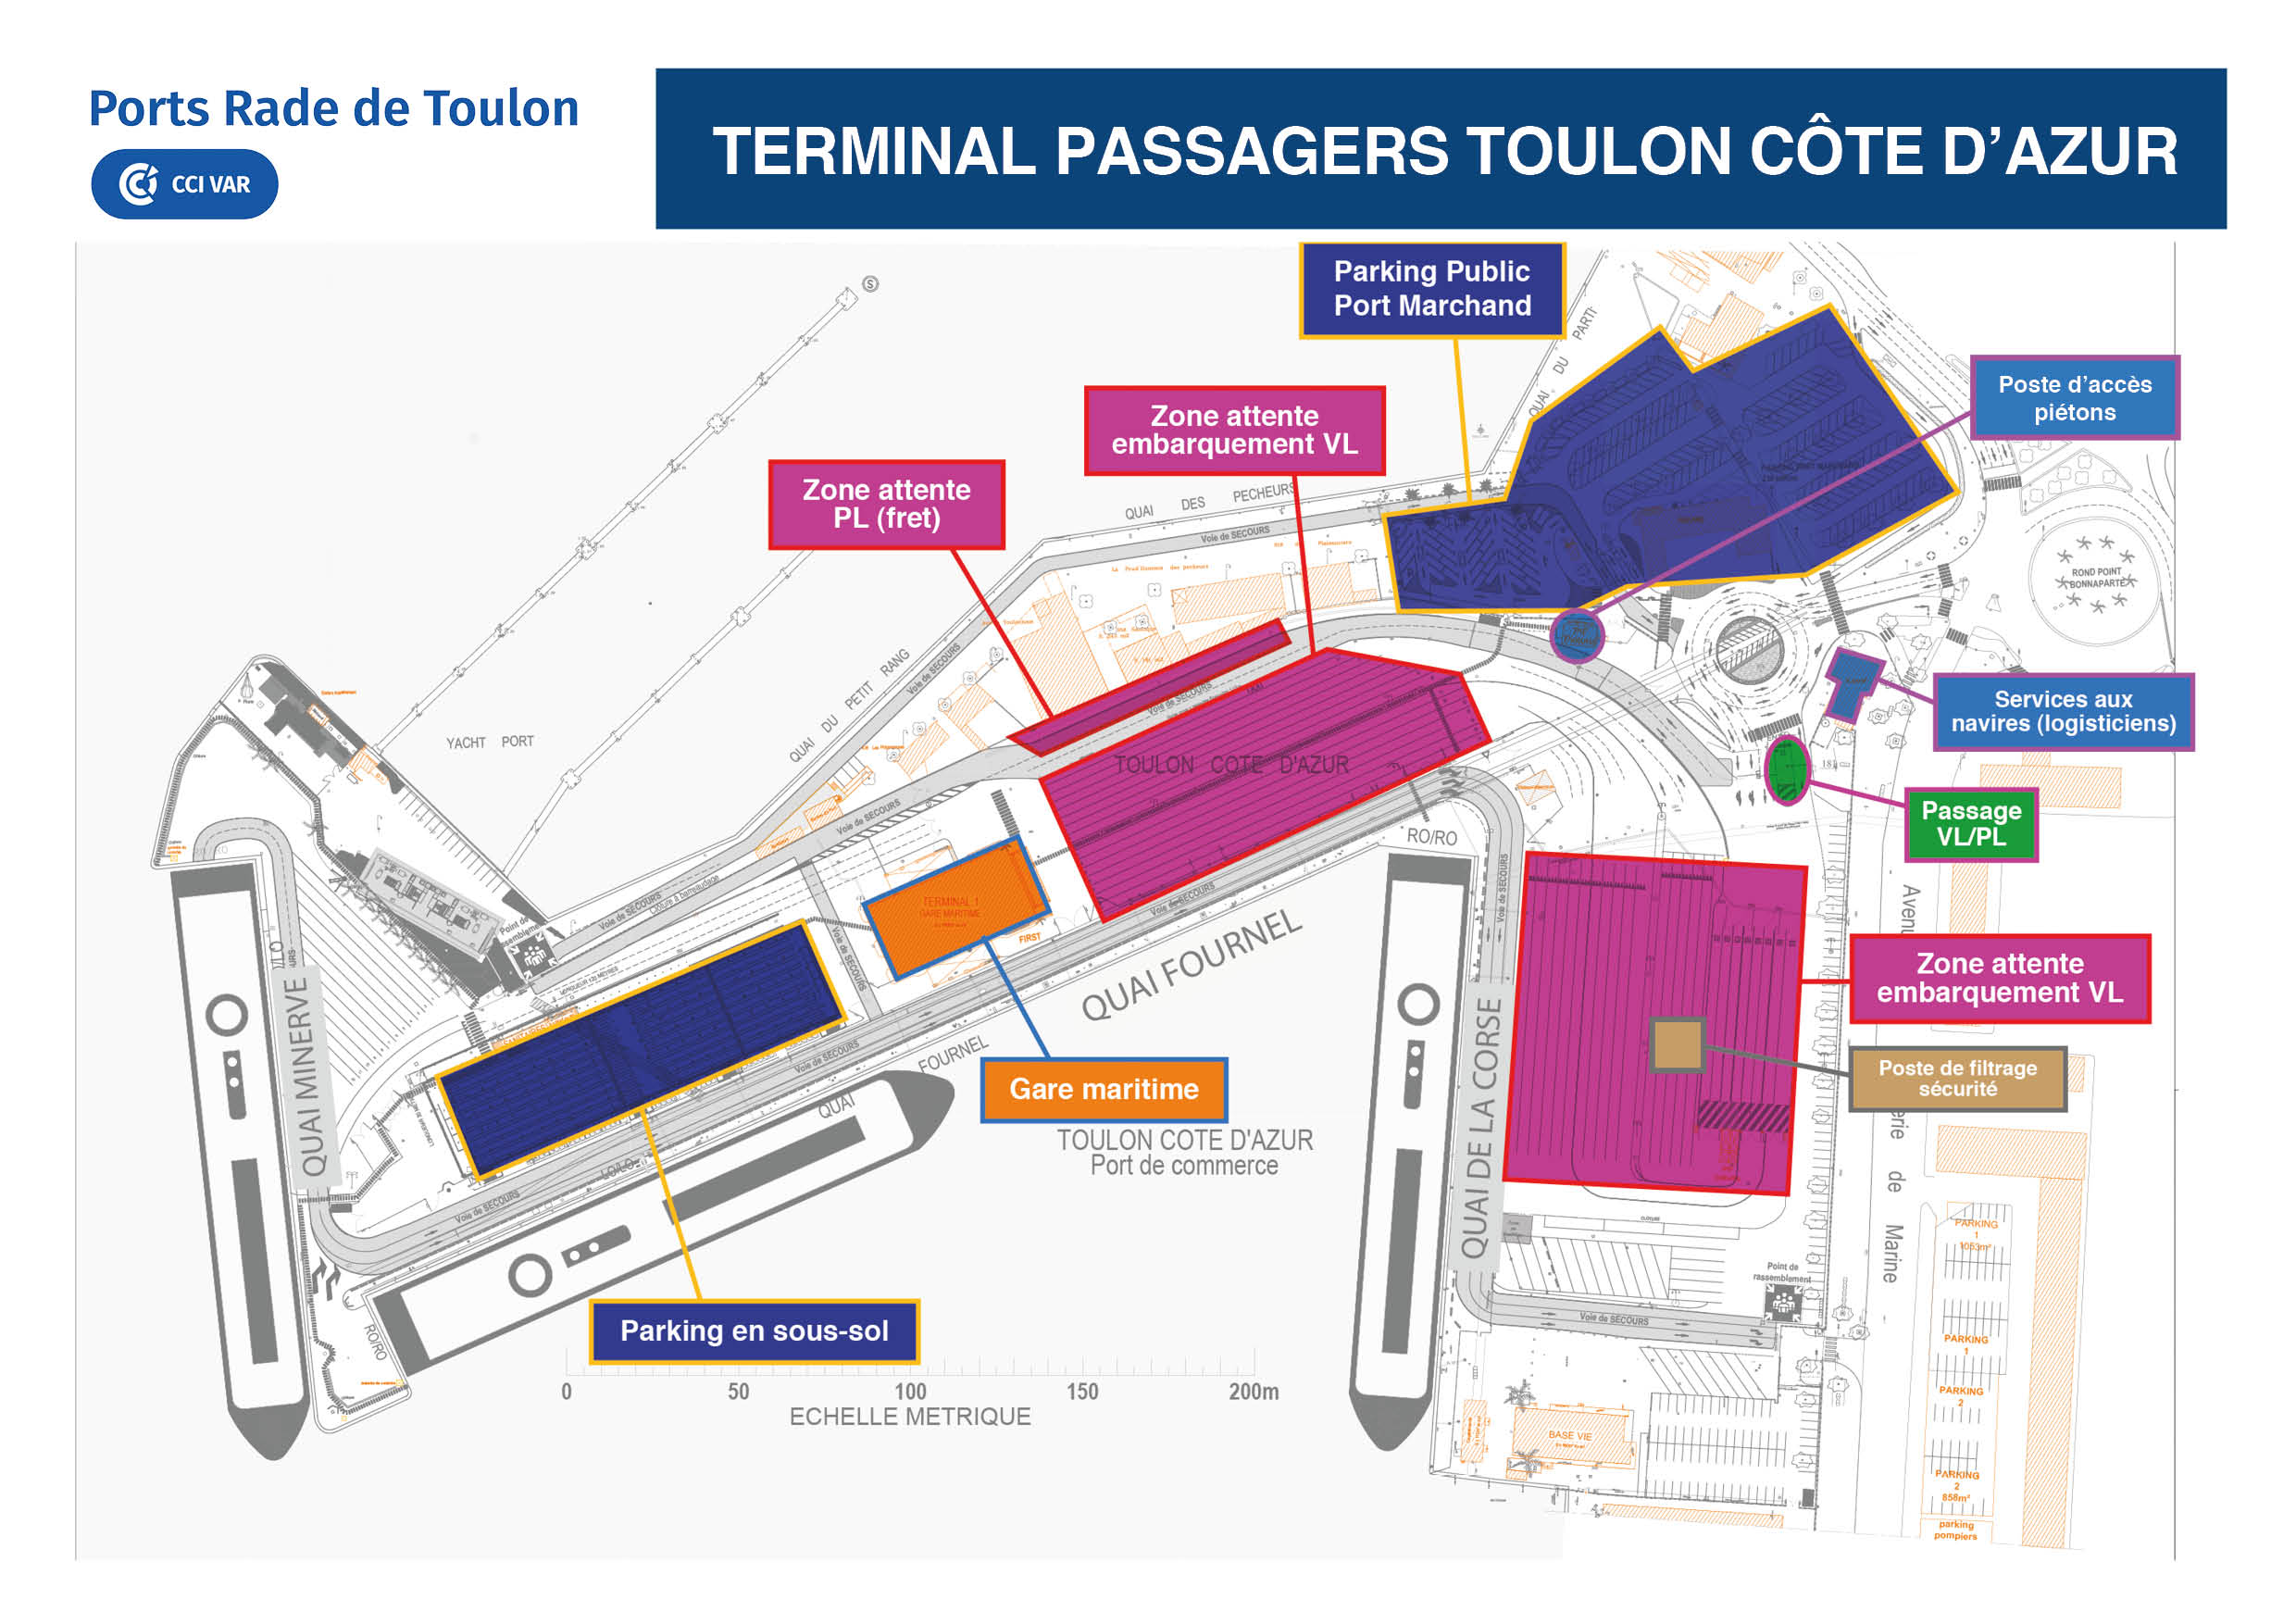 Terminal Passagers Toulon Côte d'Azur